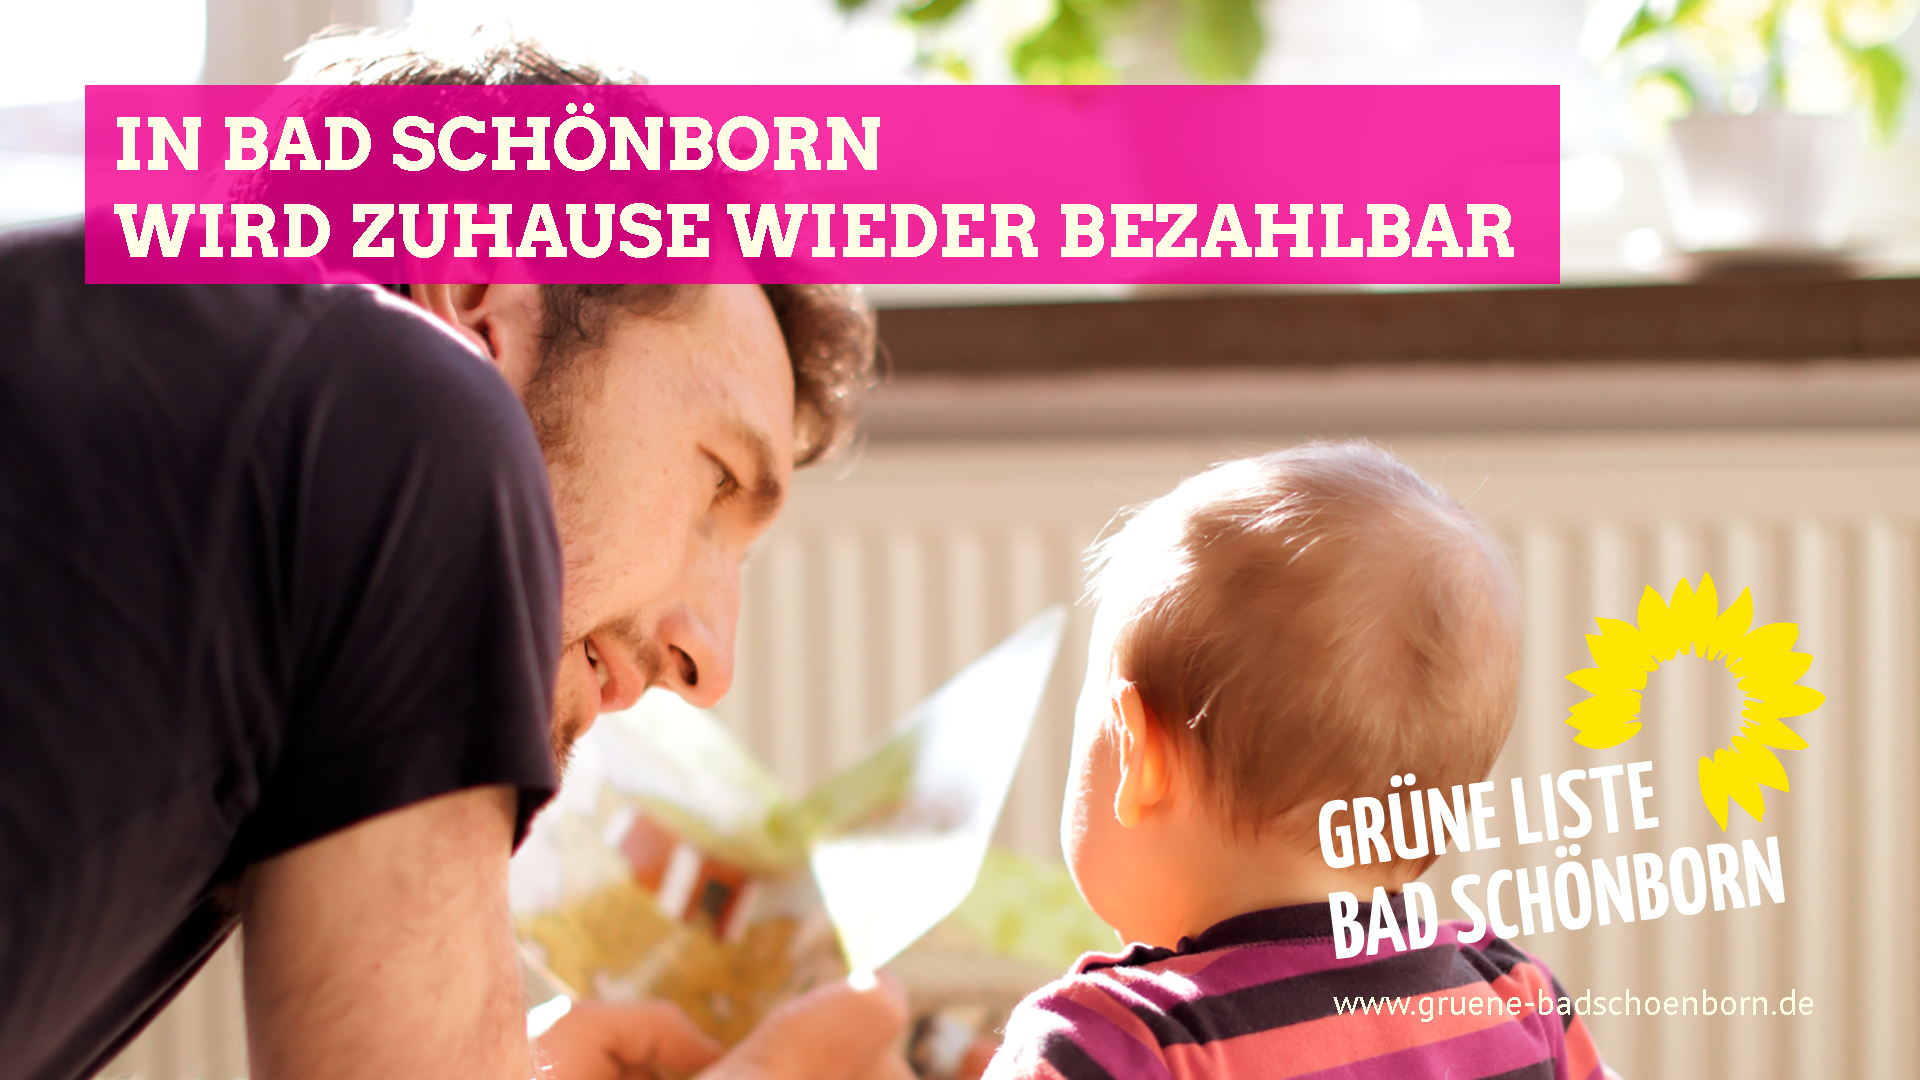 In Bad Schönborn wird zuhause wieder bezahlbar